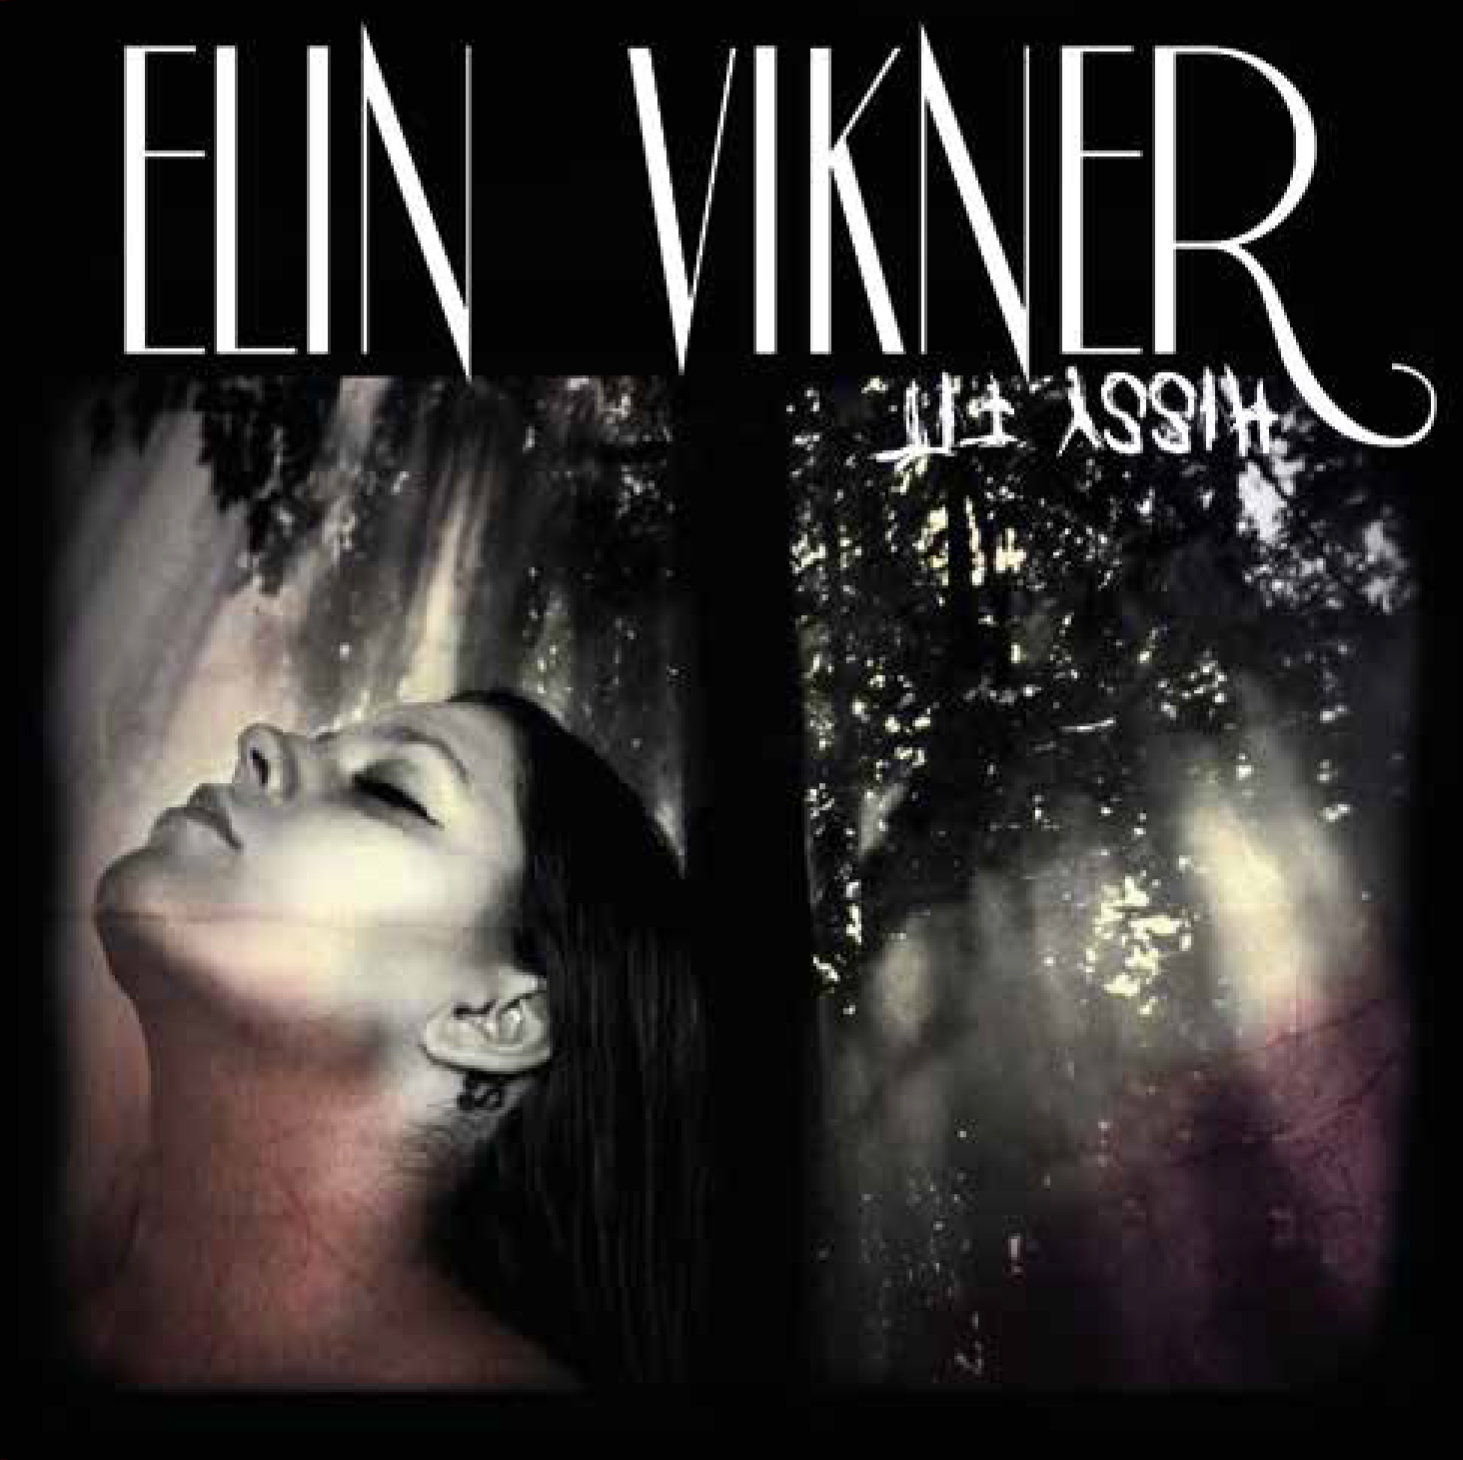 Elin Vikner Hizzy Fit EP Release